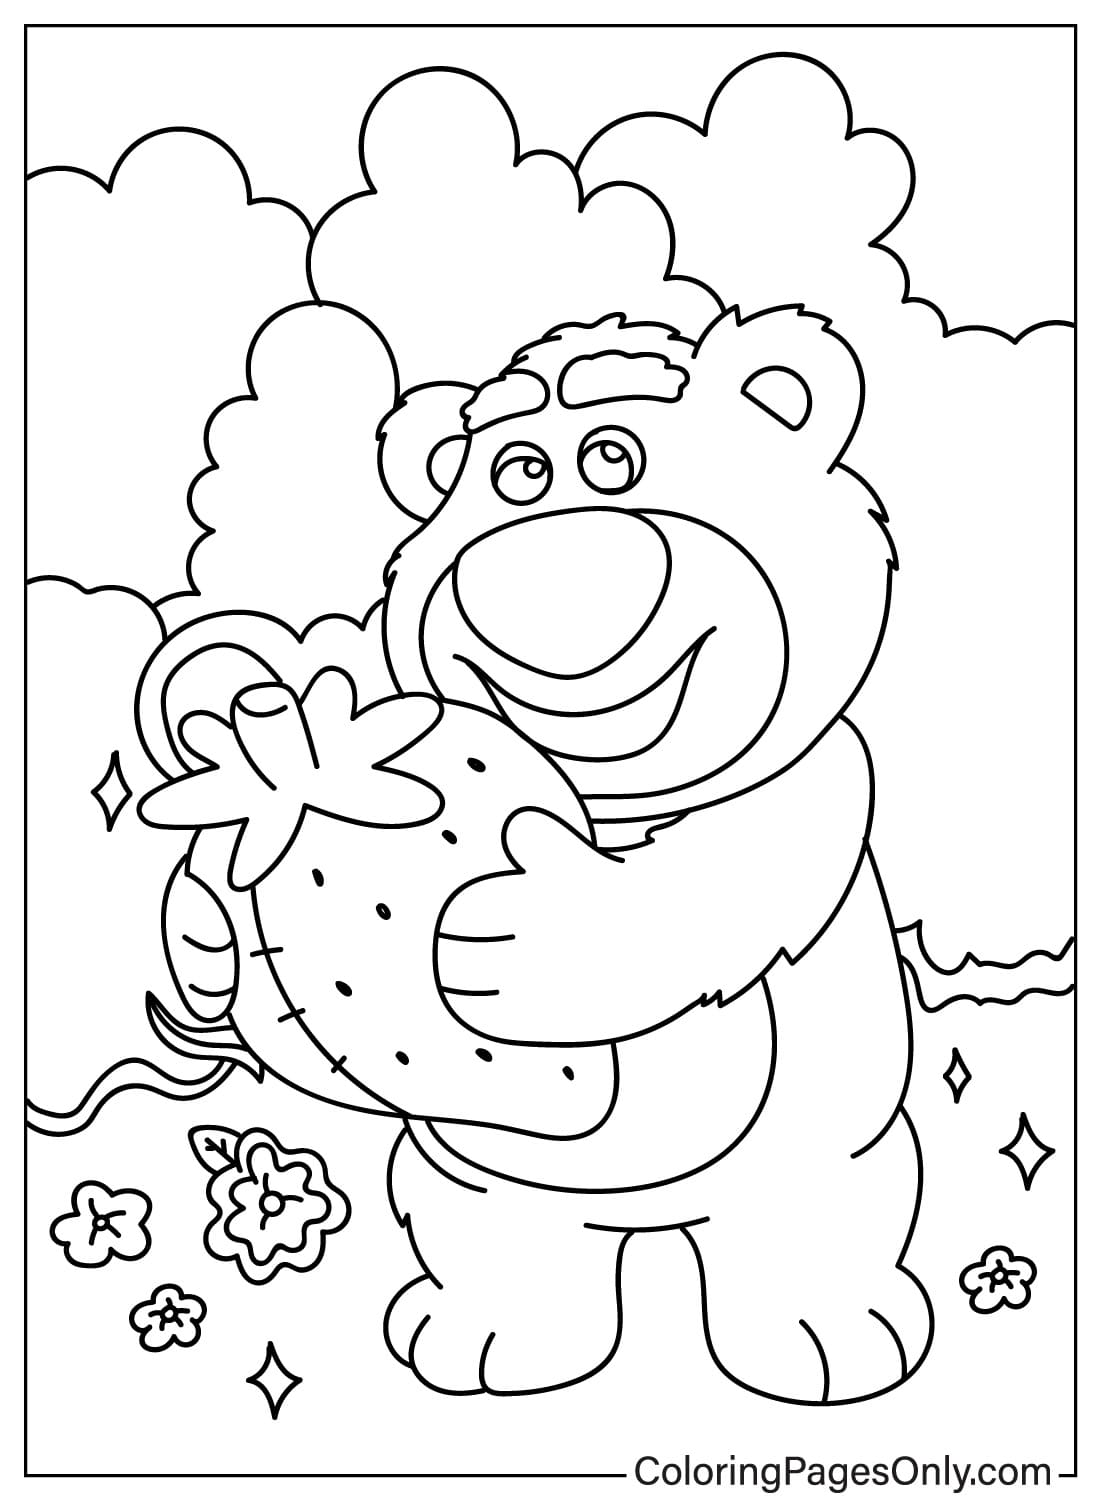 Página para colorear de Lotso gratis de Lotso Bear